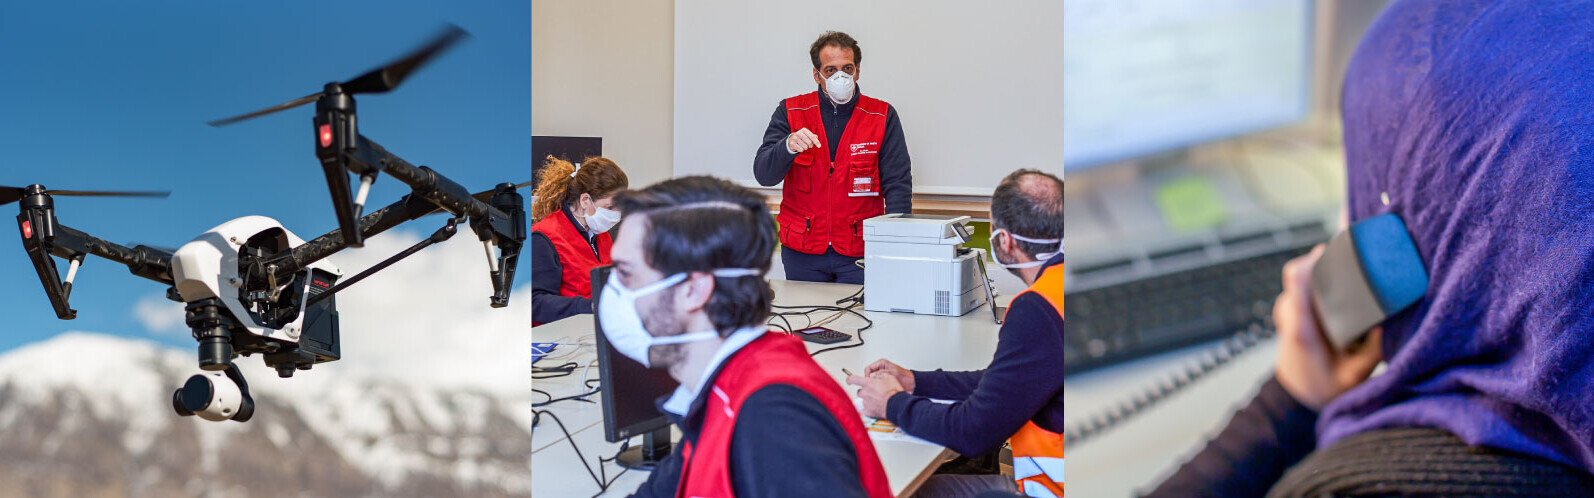 Digitale Wege in der humanitären Hilfe während der Corona-Pandemie © Mitch Nielsen on Unsplash/Malteser International/Islamic Relief 